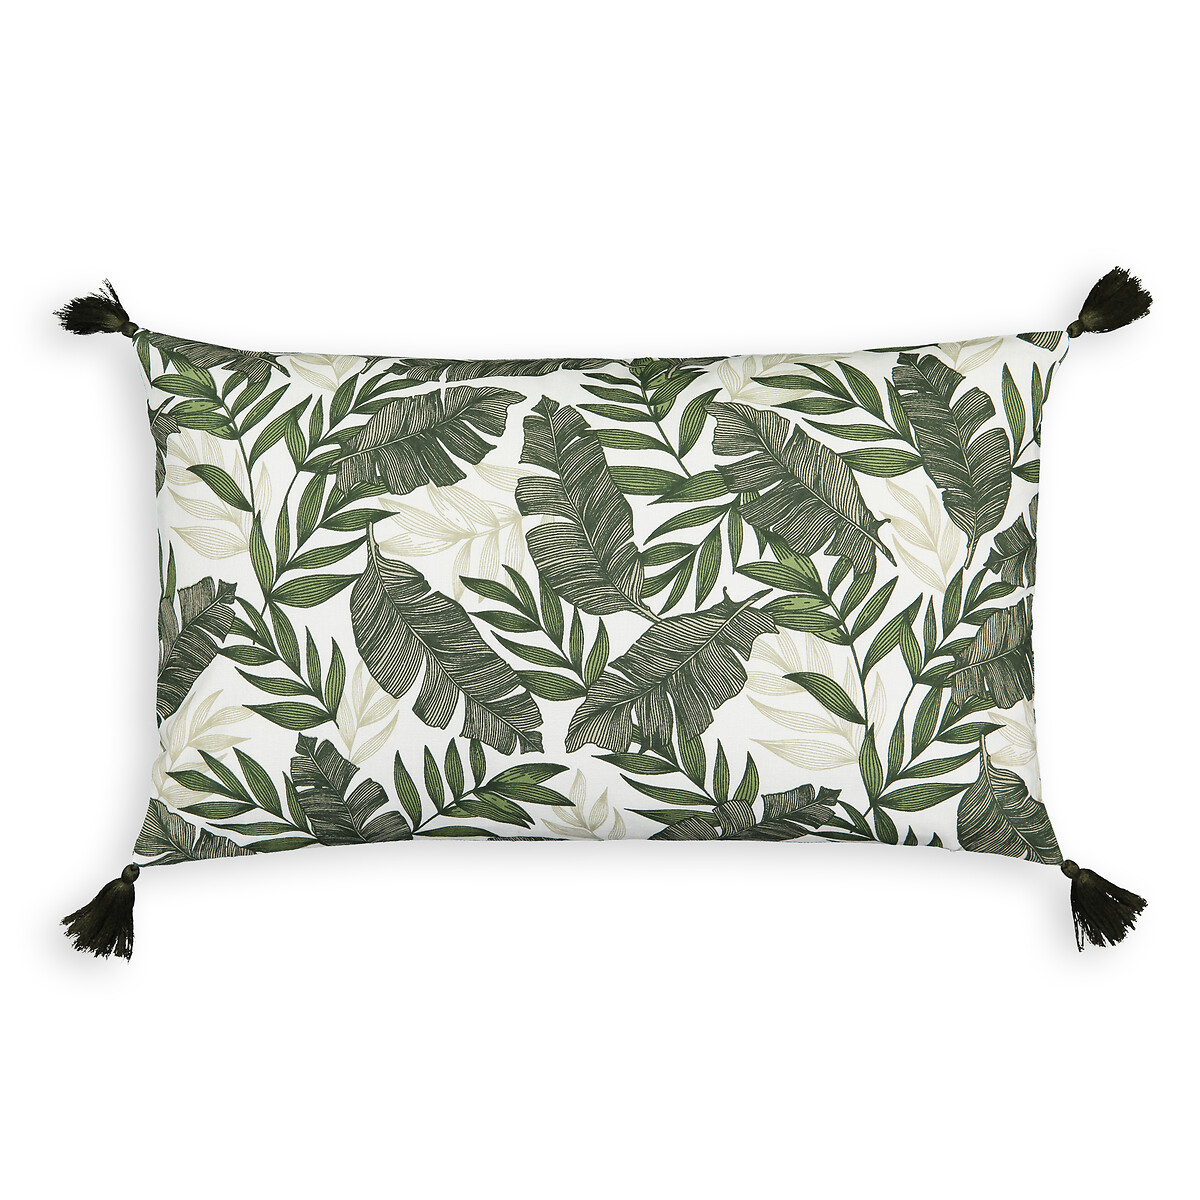 Чехол LA REDOUTE INTERIEURS На подушку прямоугольный Palma 50 x 30 см зеленый, размер 50 x 30 см - фото 1